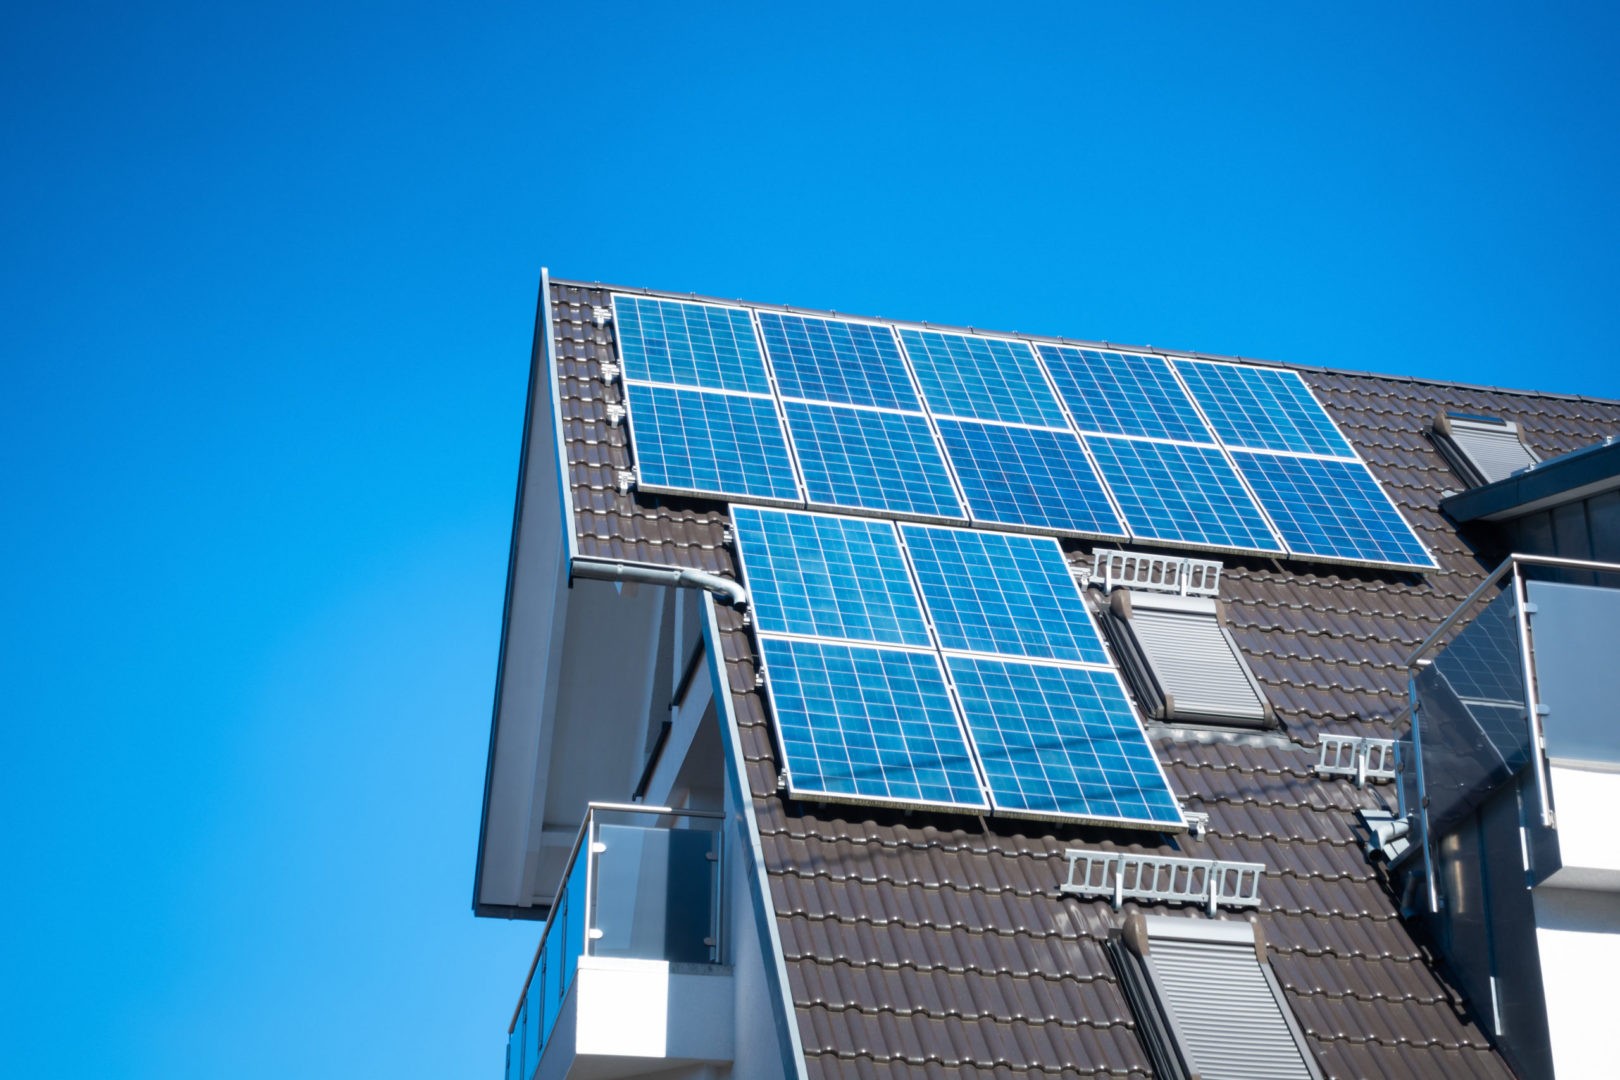 פאנלים סולאריים על הגג | חשמל סולארי על הגג - תמונה להמחשה